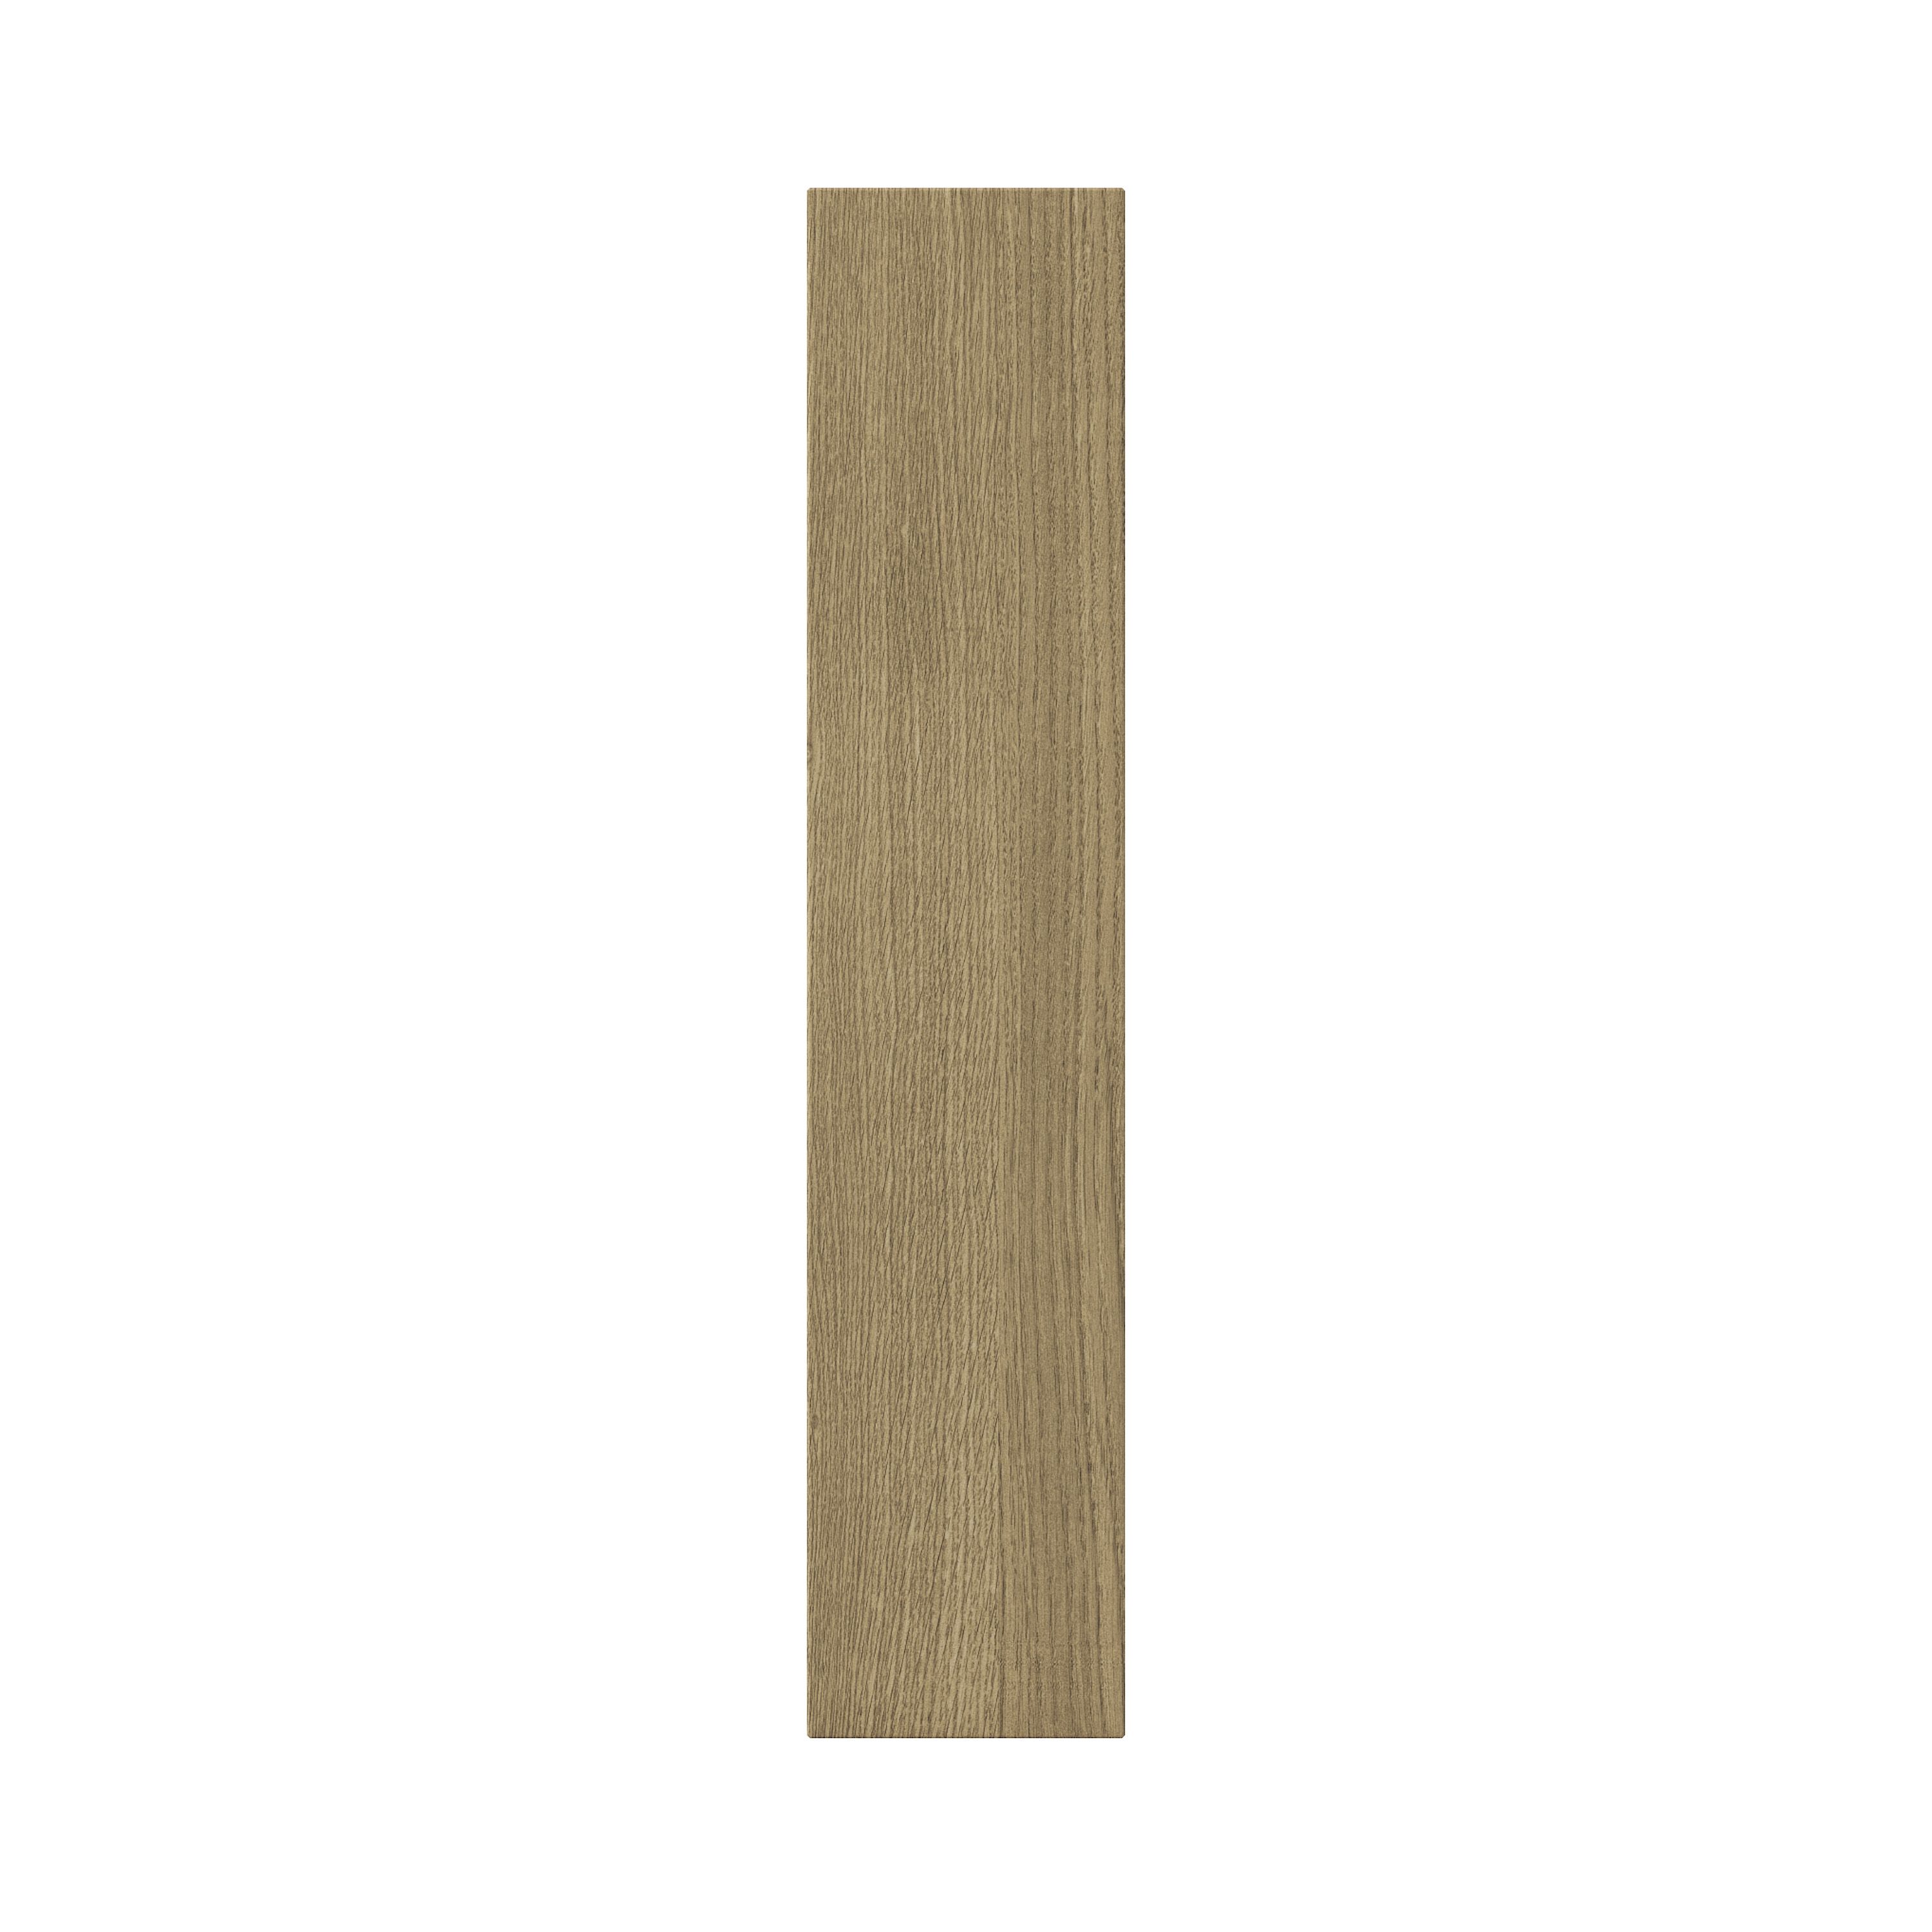 GoodHome Alpinia Oak effect shaker Highline Cabinet door (W)150mm (H)715mm (T)18mm